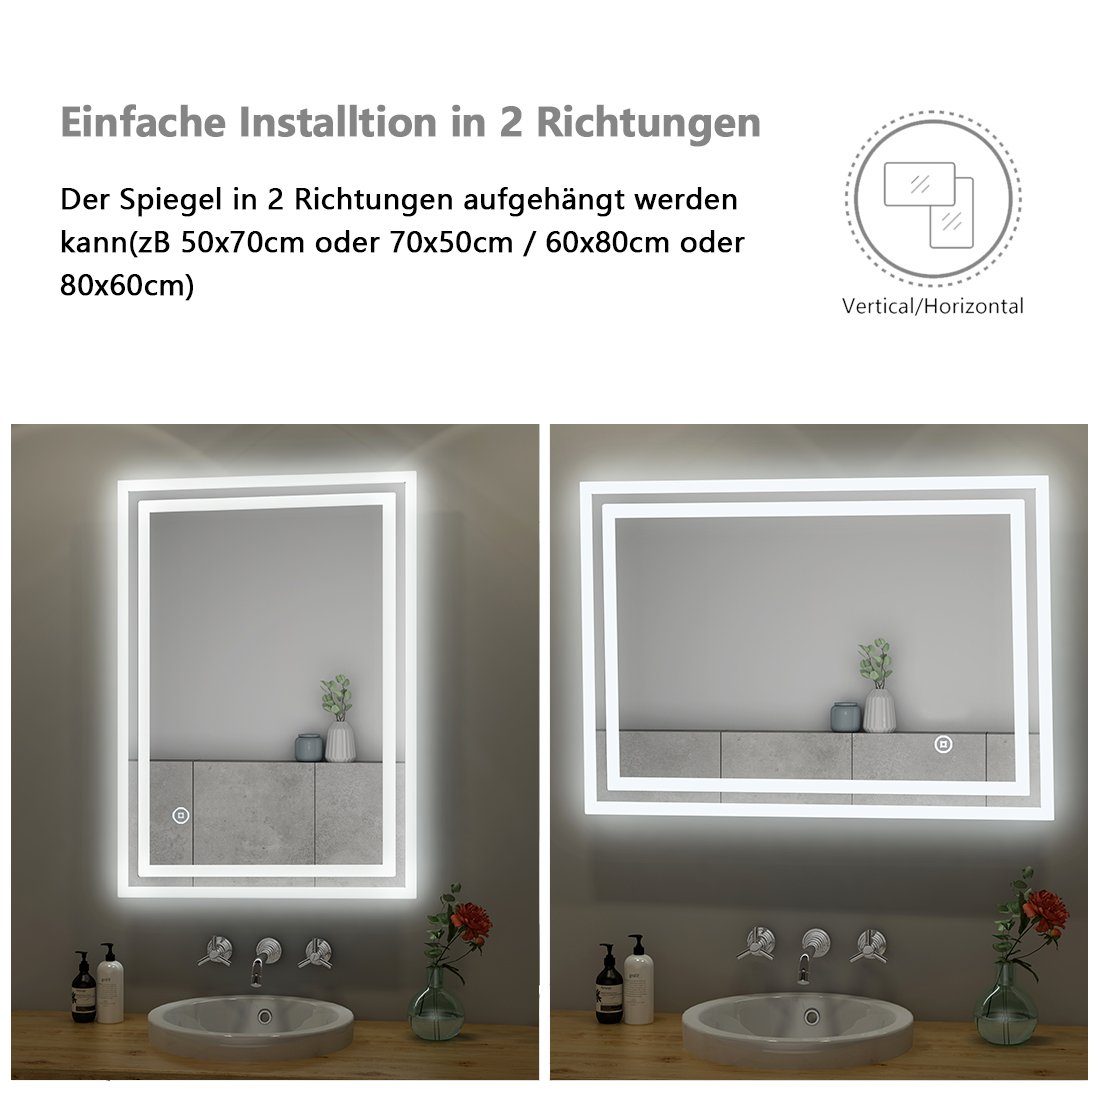 Badspiegel Druckknopfschalter, S'AFIELINA mit LED mit IP44 Badspiegel Beschlagfrei,2 Wandmontage, Beleuchtung, Lichtfarben,Energiesparend, Badspiegel